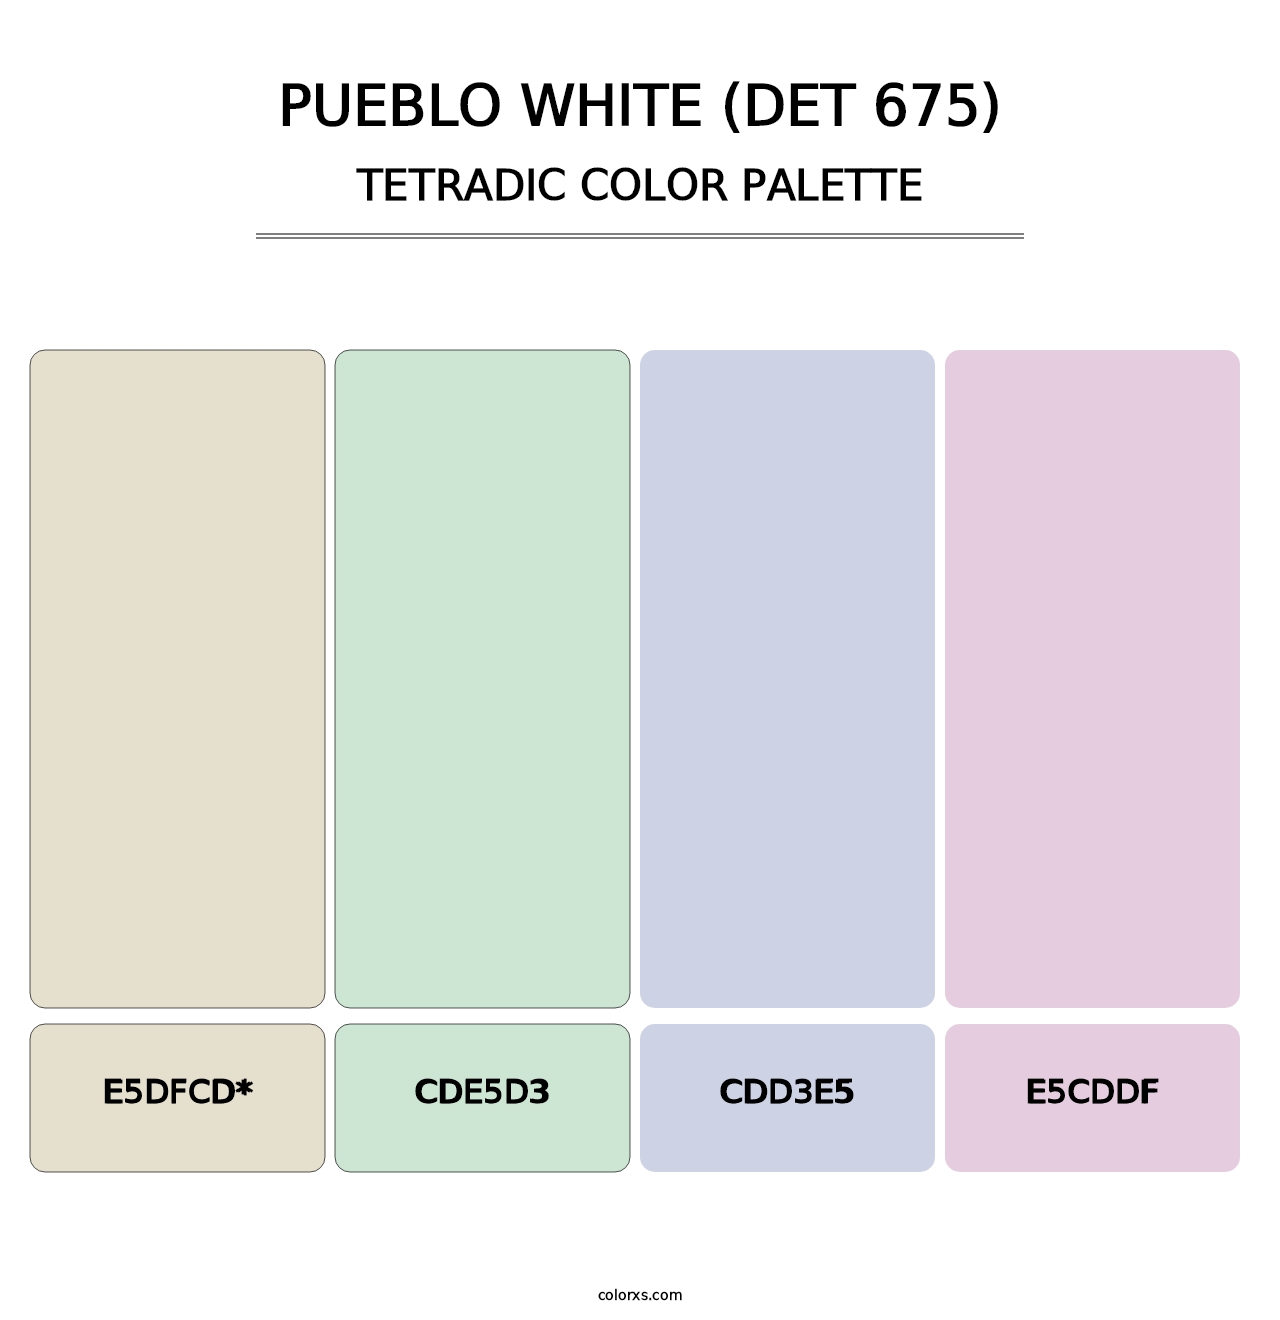 Pueblo White (DET 675) - Tetradic Color Palette